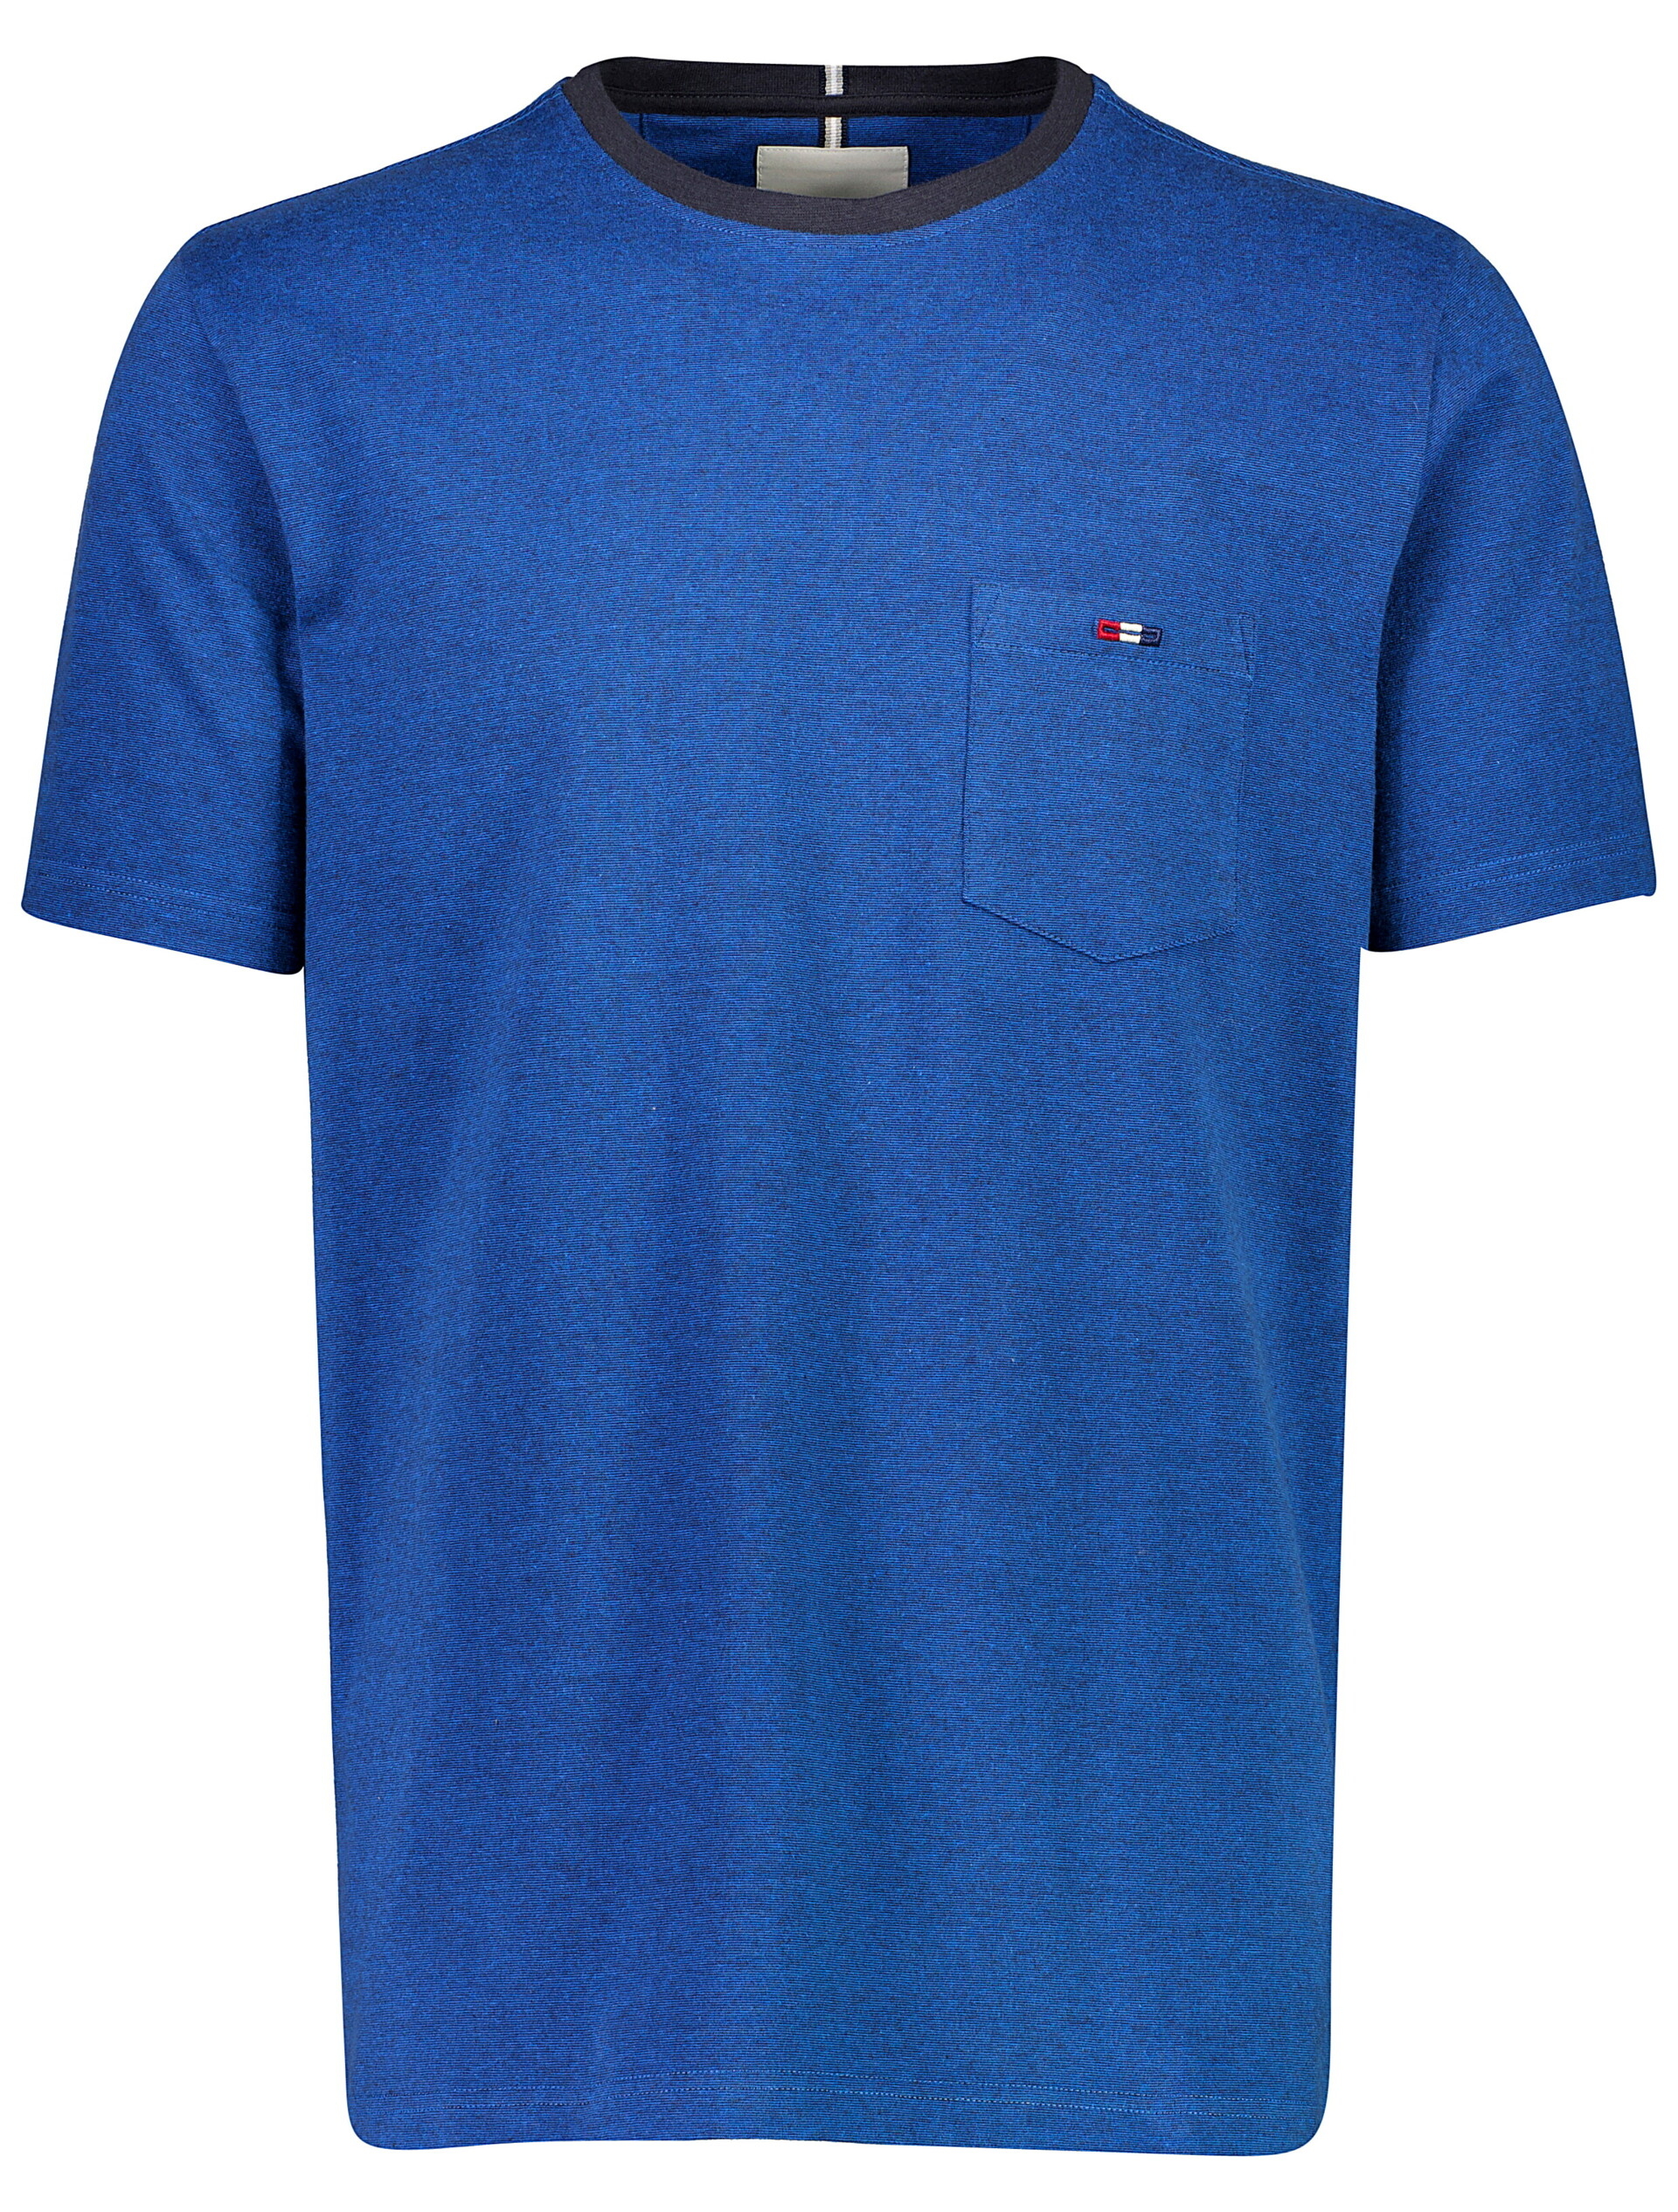 Bison T-shirt blå / blue